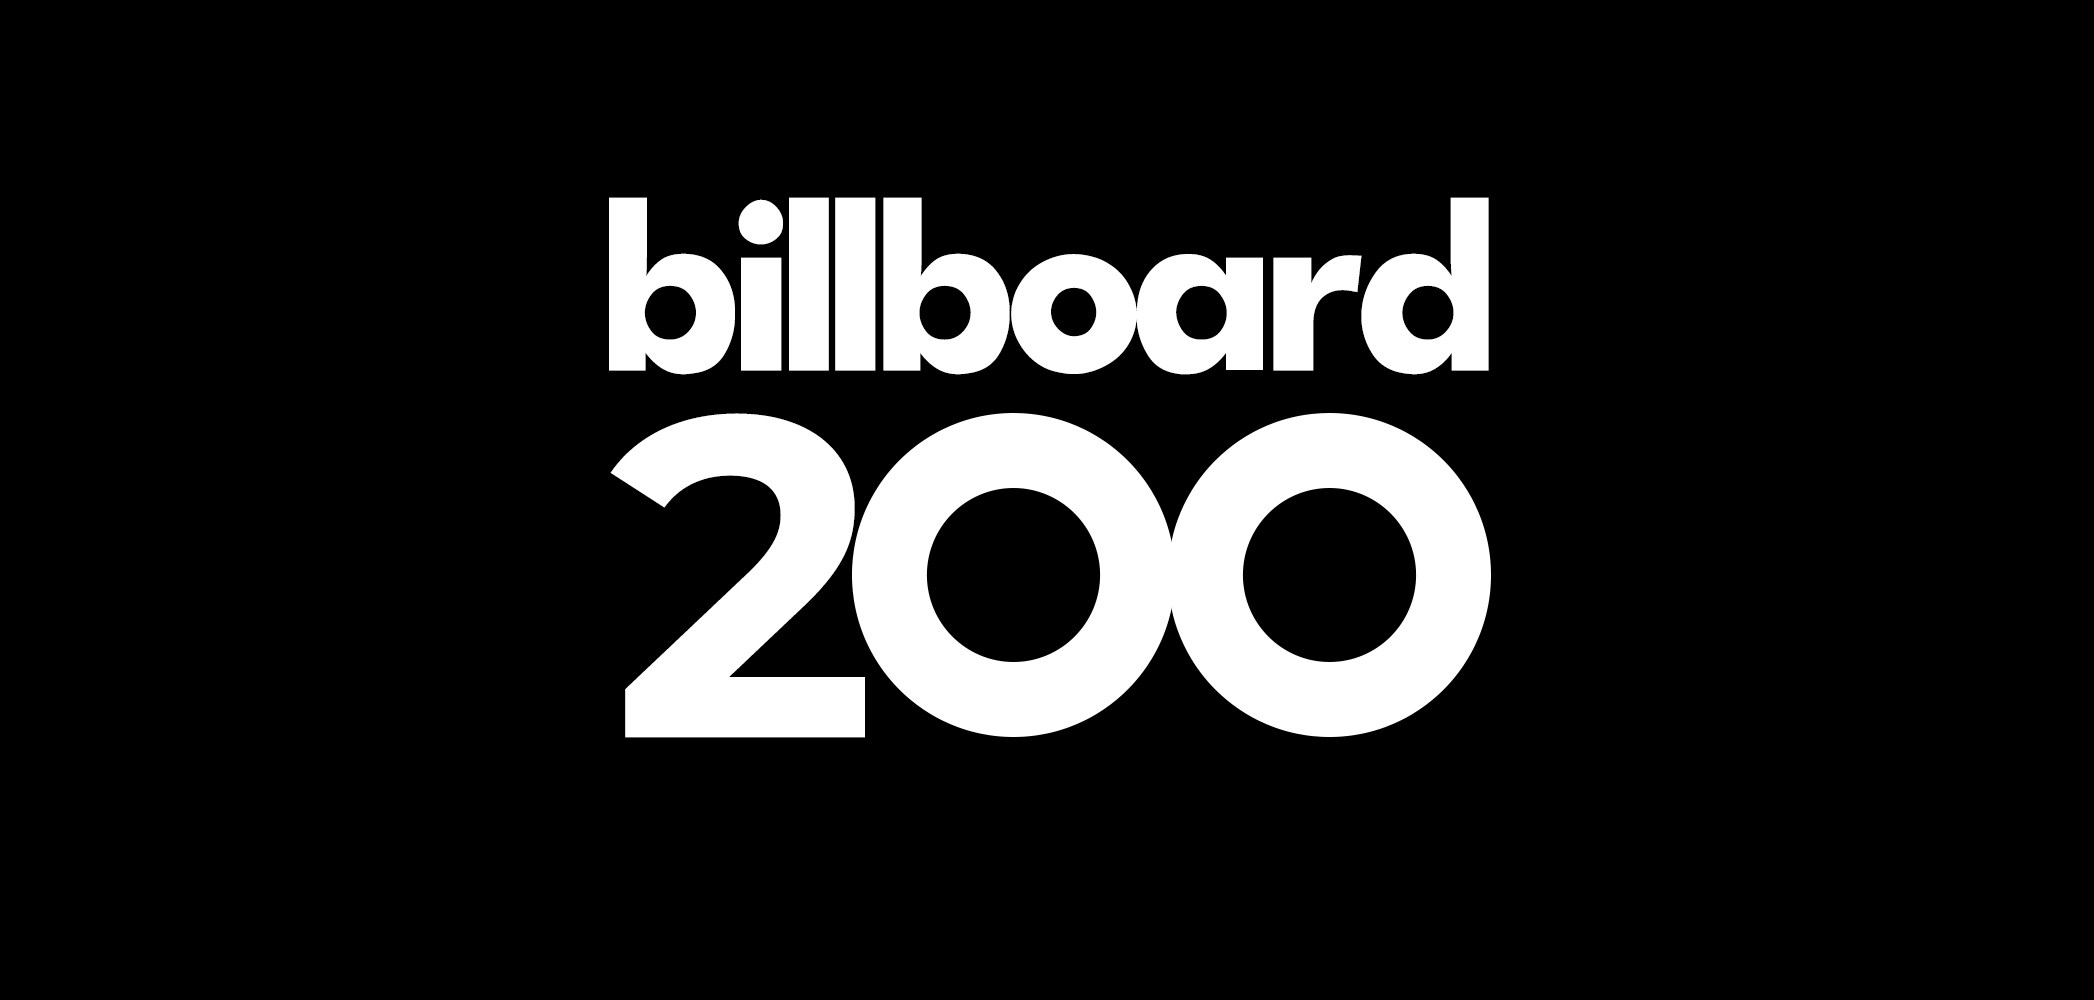 Billboard được phát hành bởi tạp chí Billboard